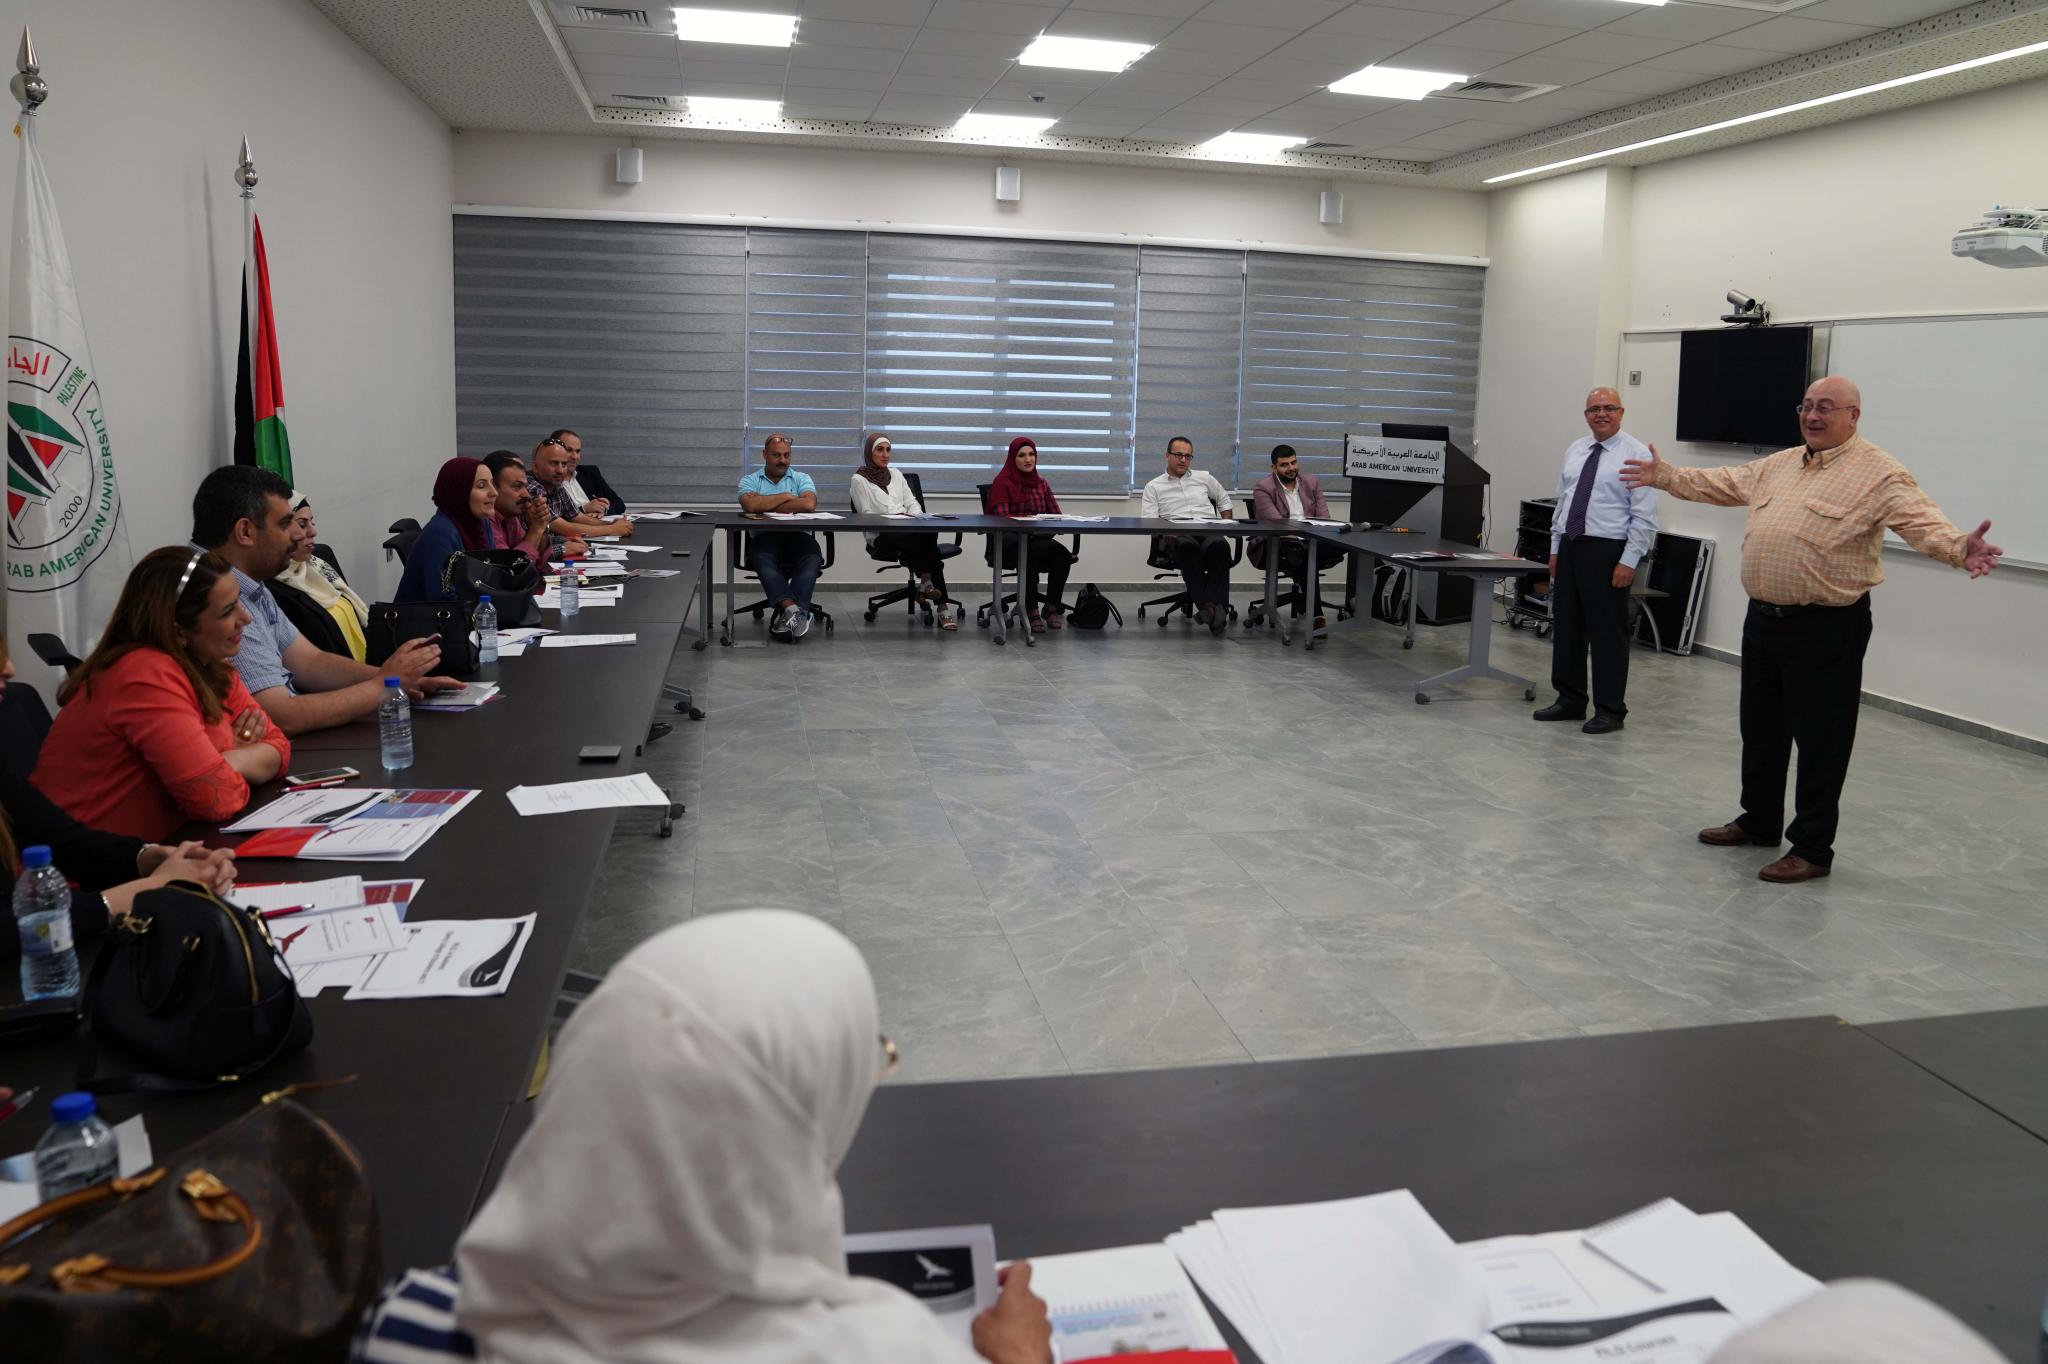 الجامعة تعلن عن بدء التدريس ببرنامج الدكتوراه في الأعمال الأول من نوعه في فلسطين